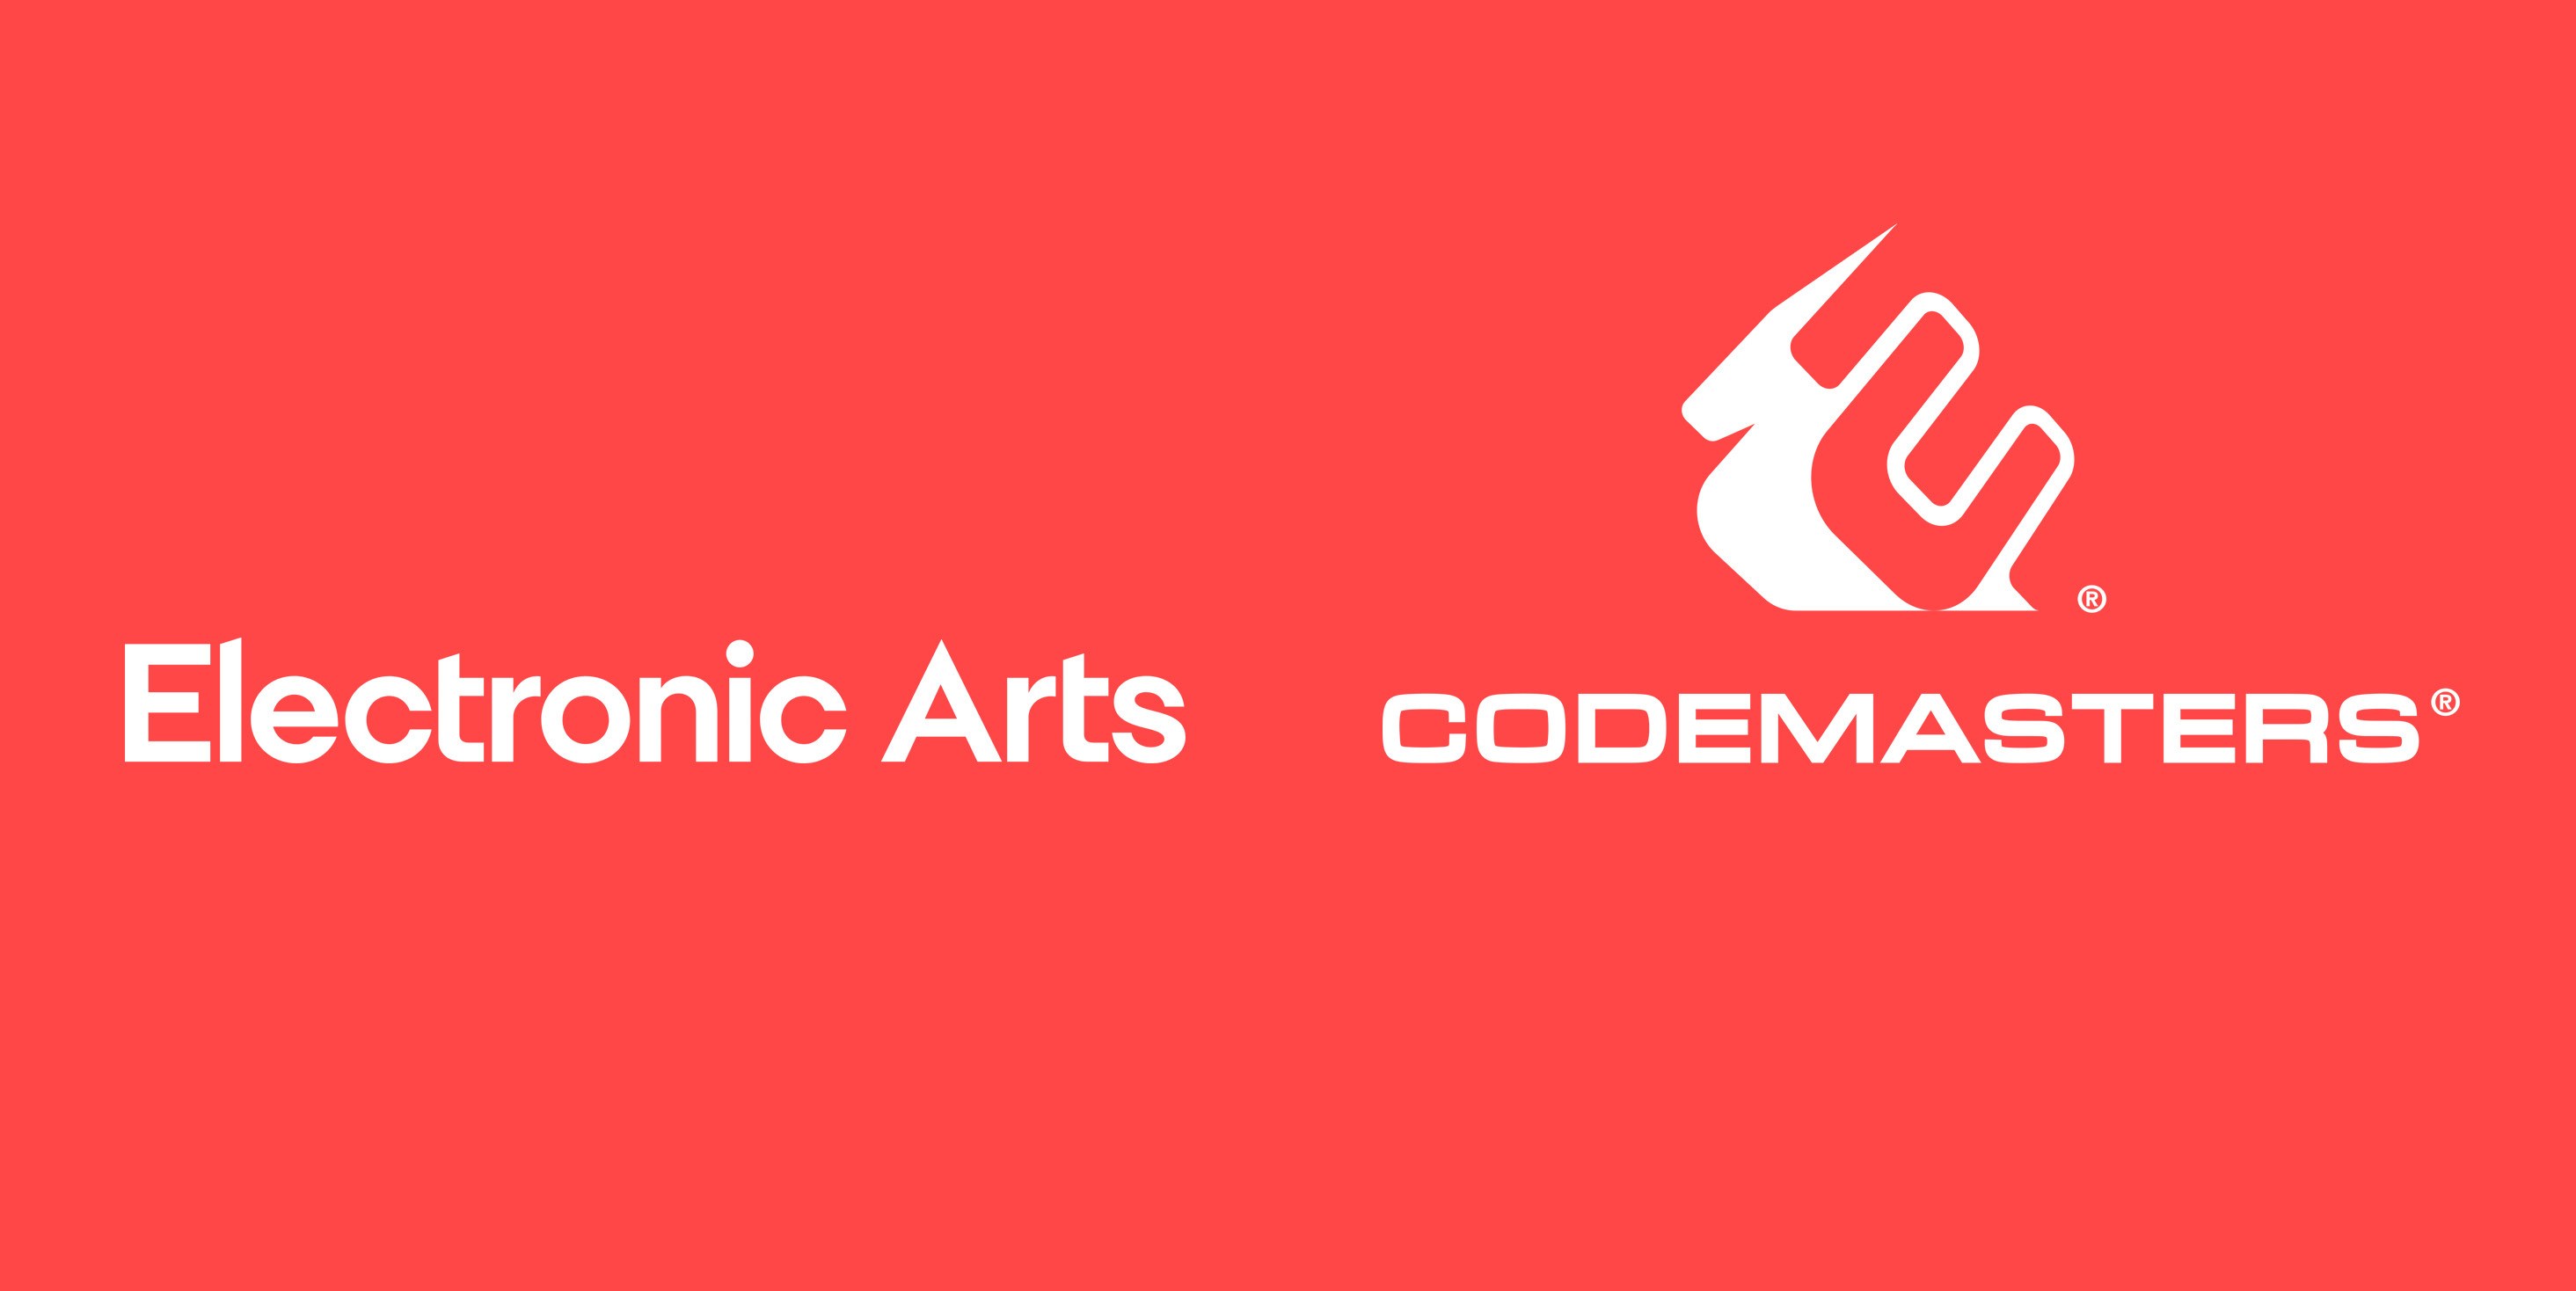 Codemasters yöneticileri şirketten ayrılıyor